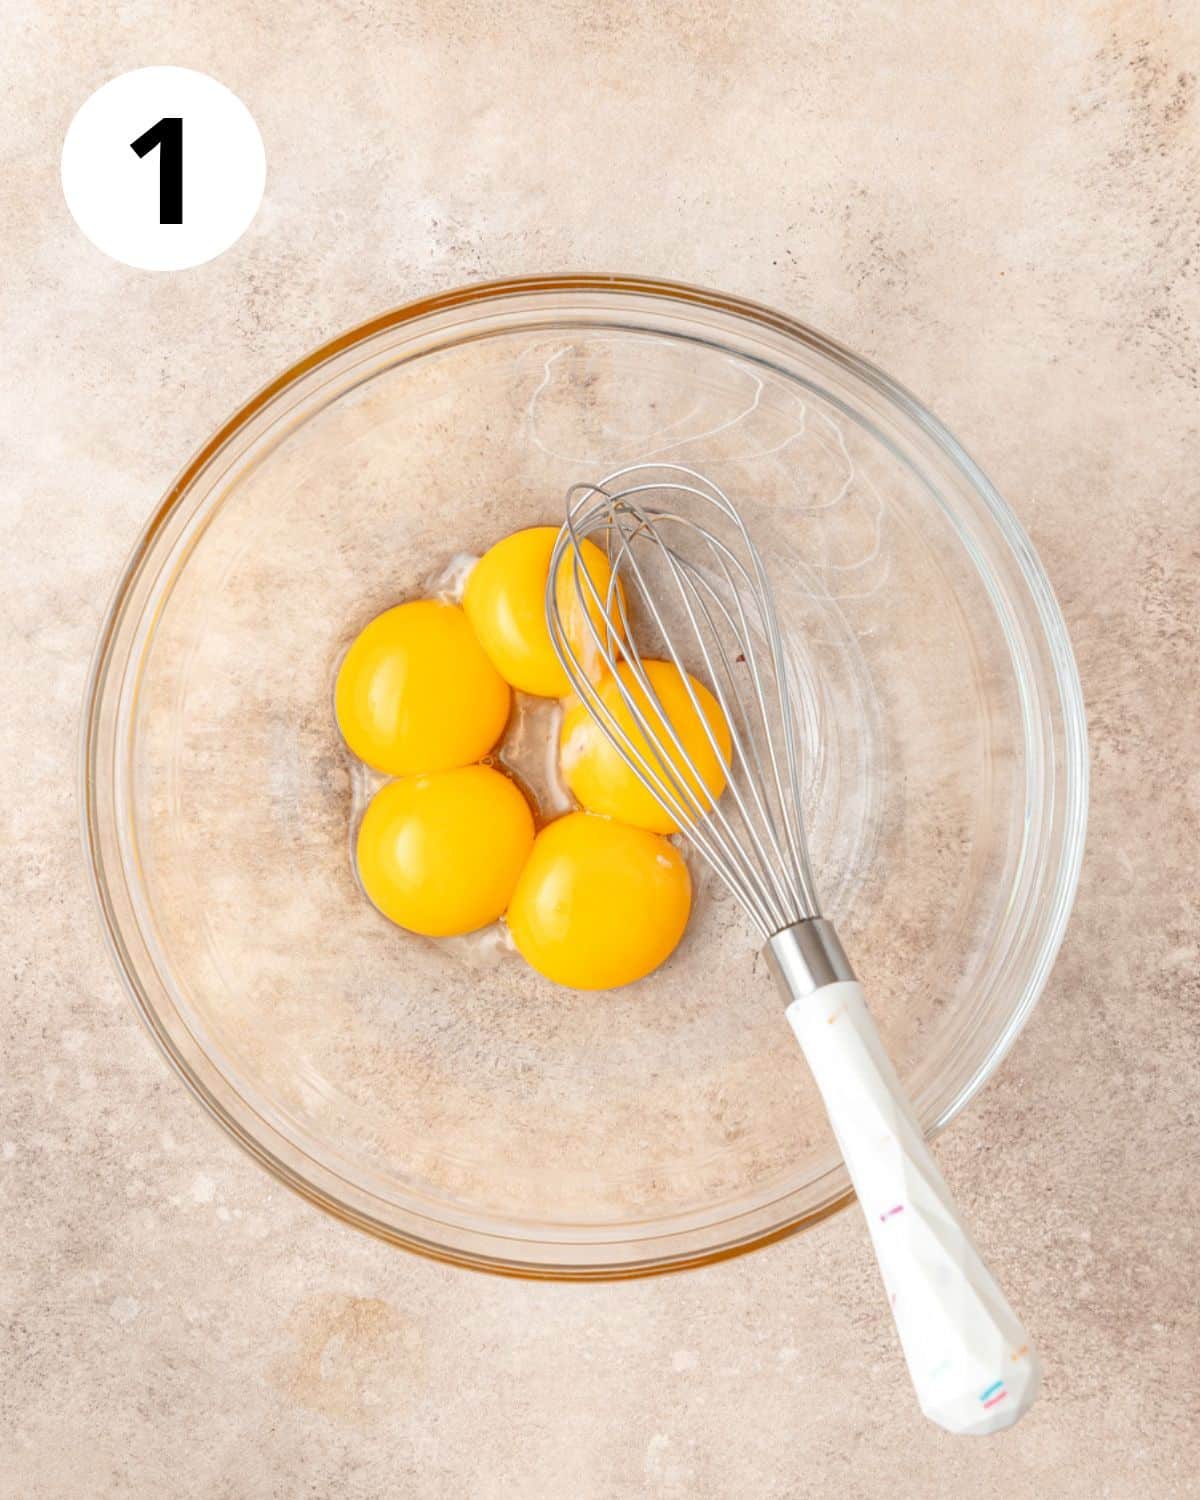 egg yolks in bowl.